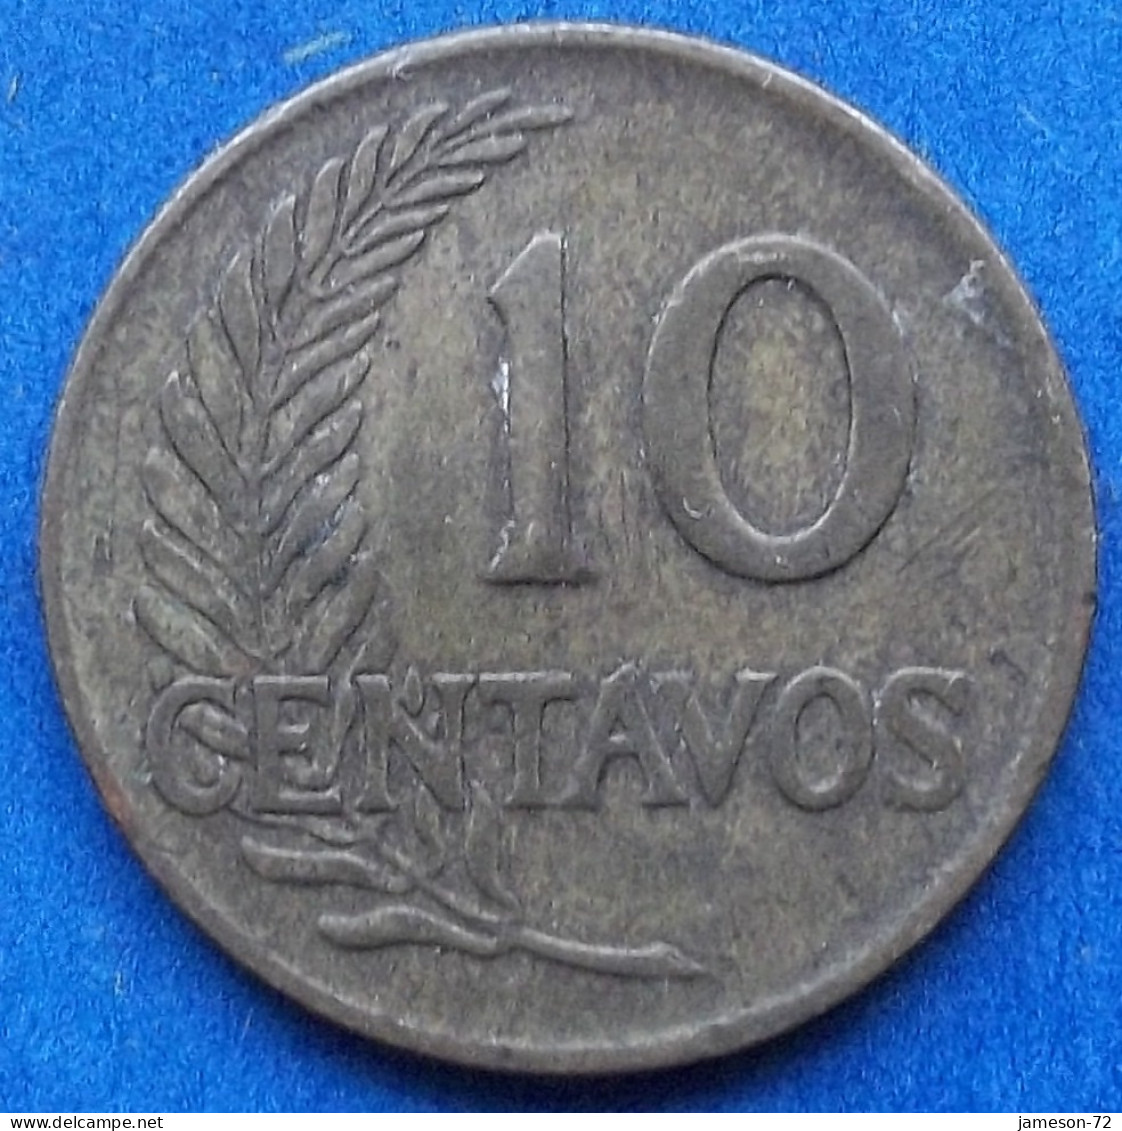 PERU - 10 Centavos 1961 "Sprig" KM# 224.2 Decimal Coinage (1893-1986) - Edelweiss Coins - Peru